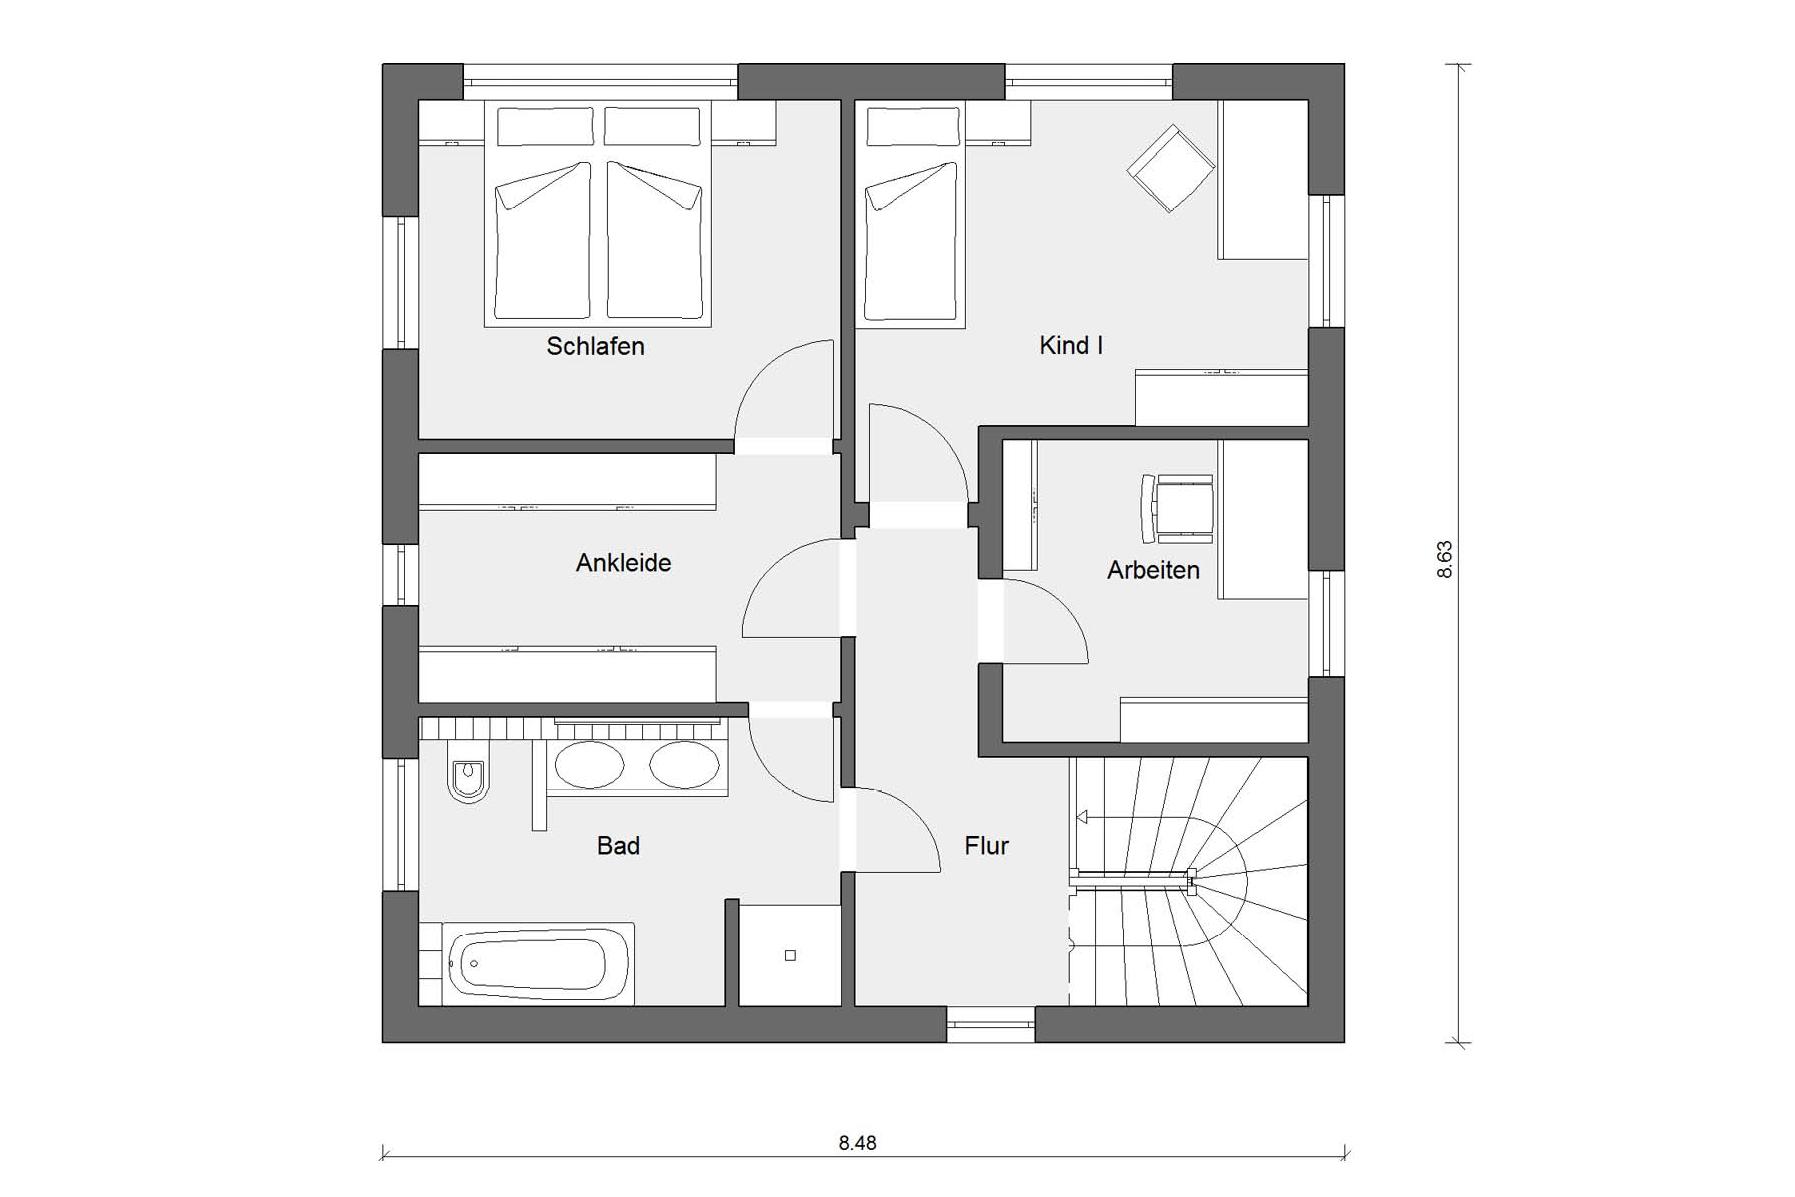 Attic floor plan Detached house Bauhaus style architecture E 20-119.1